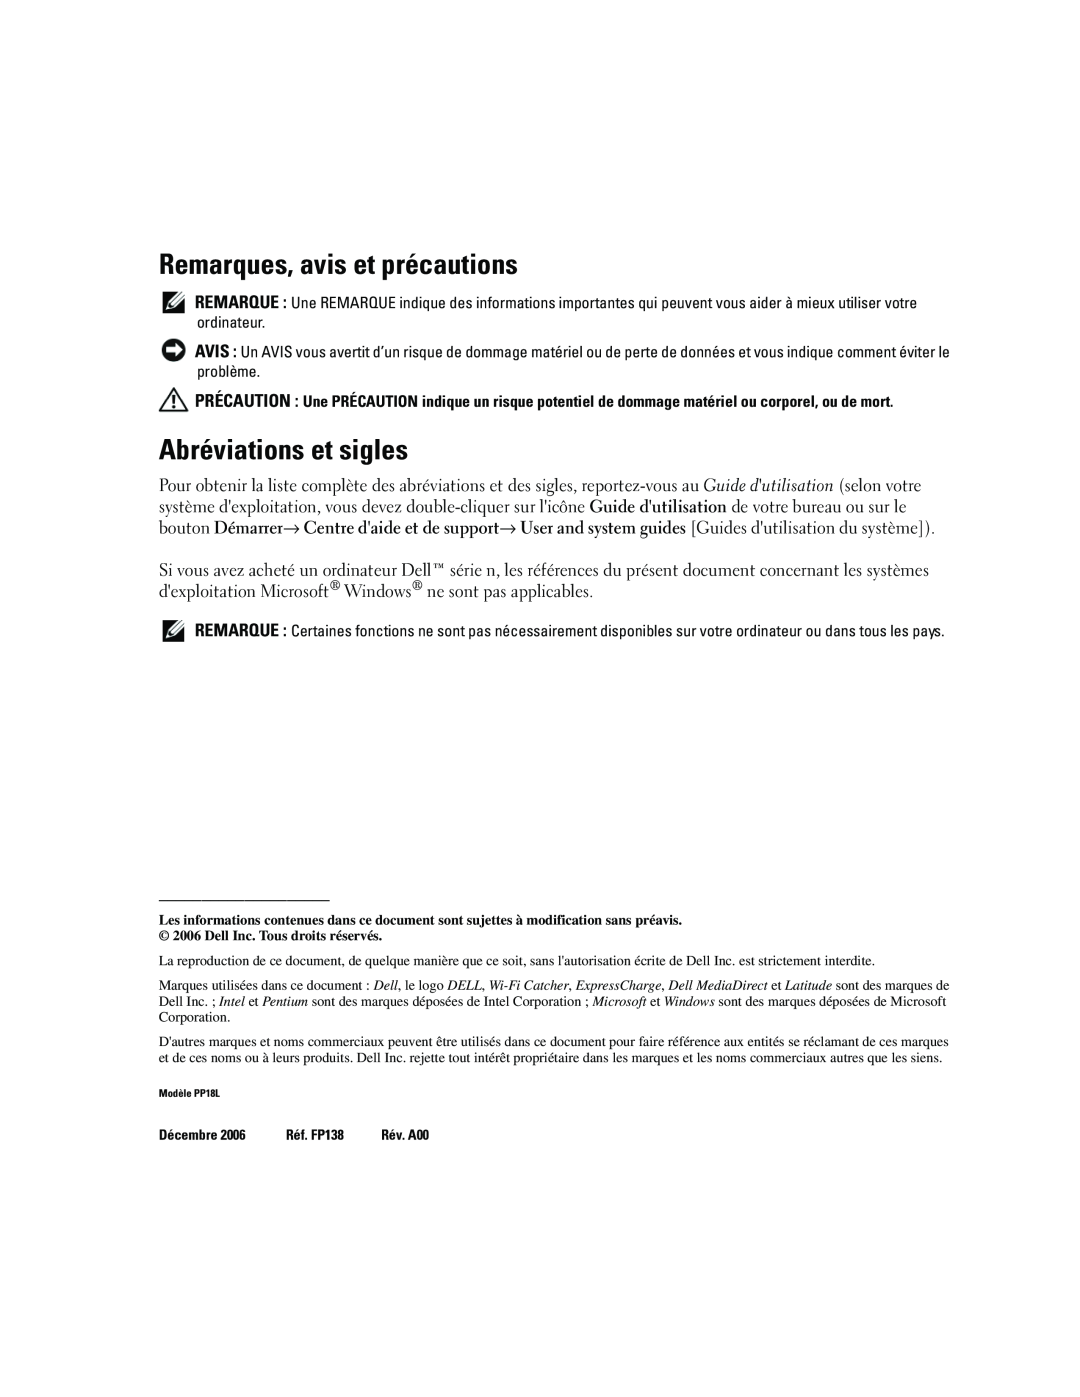 Dell ATG D620 manual Remarques, avis et précautions, Abréviations et sigles, Décembre, Réf. FP138 